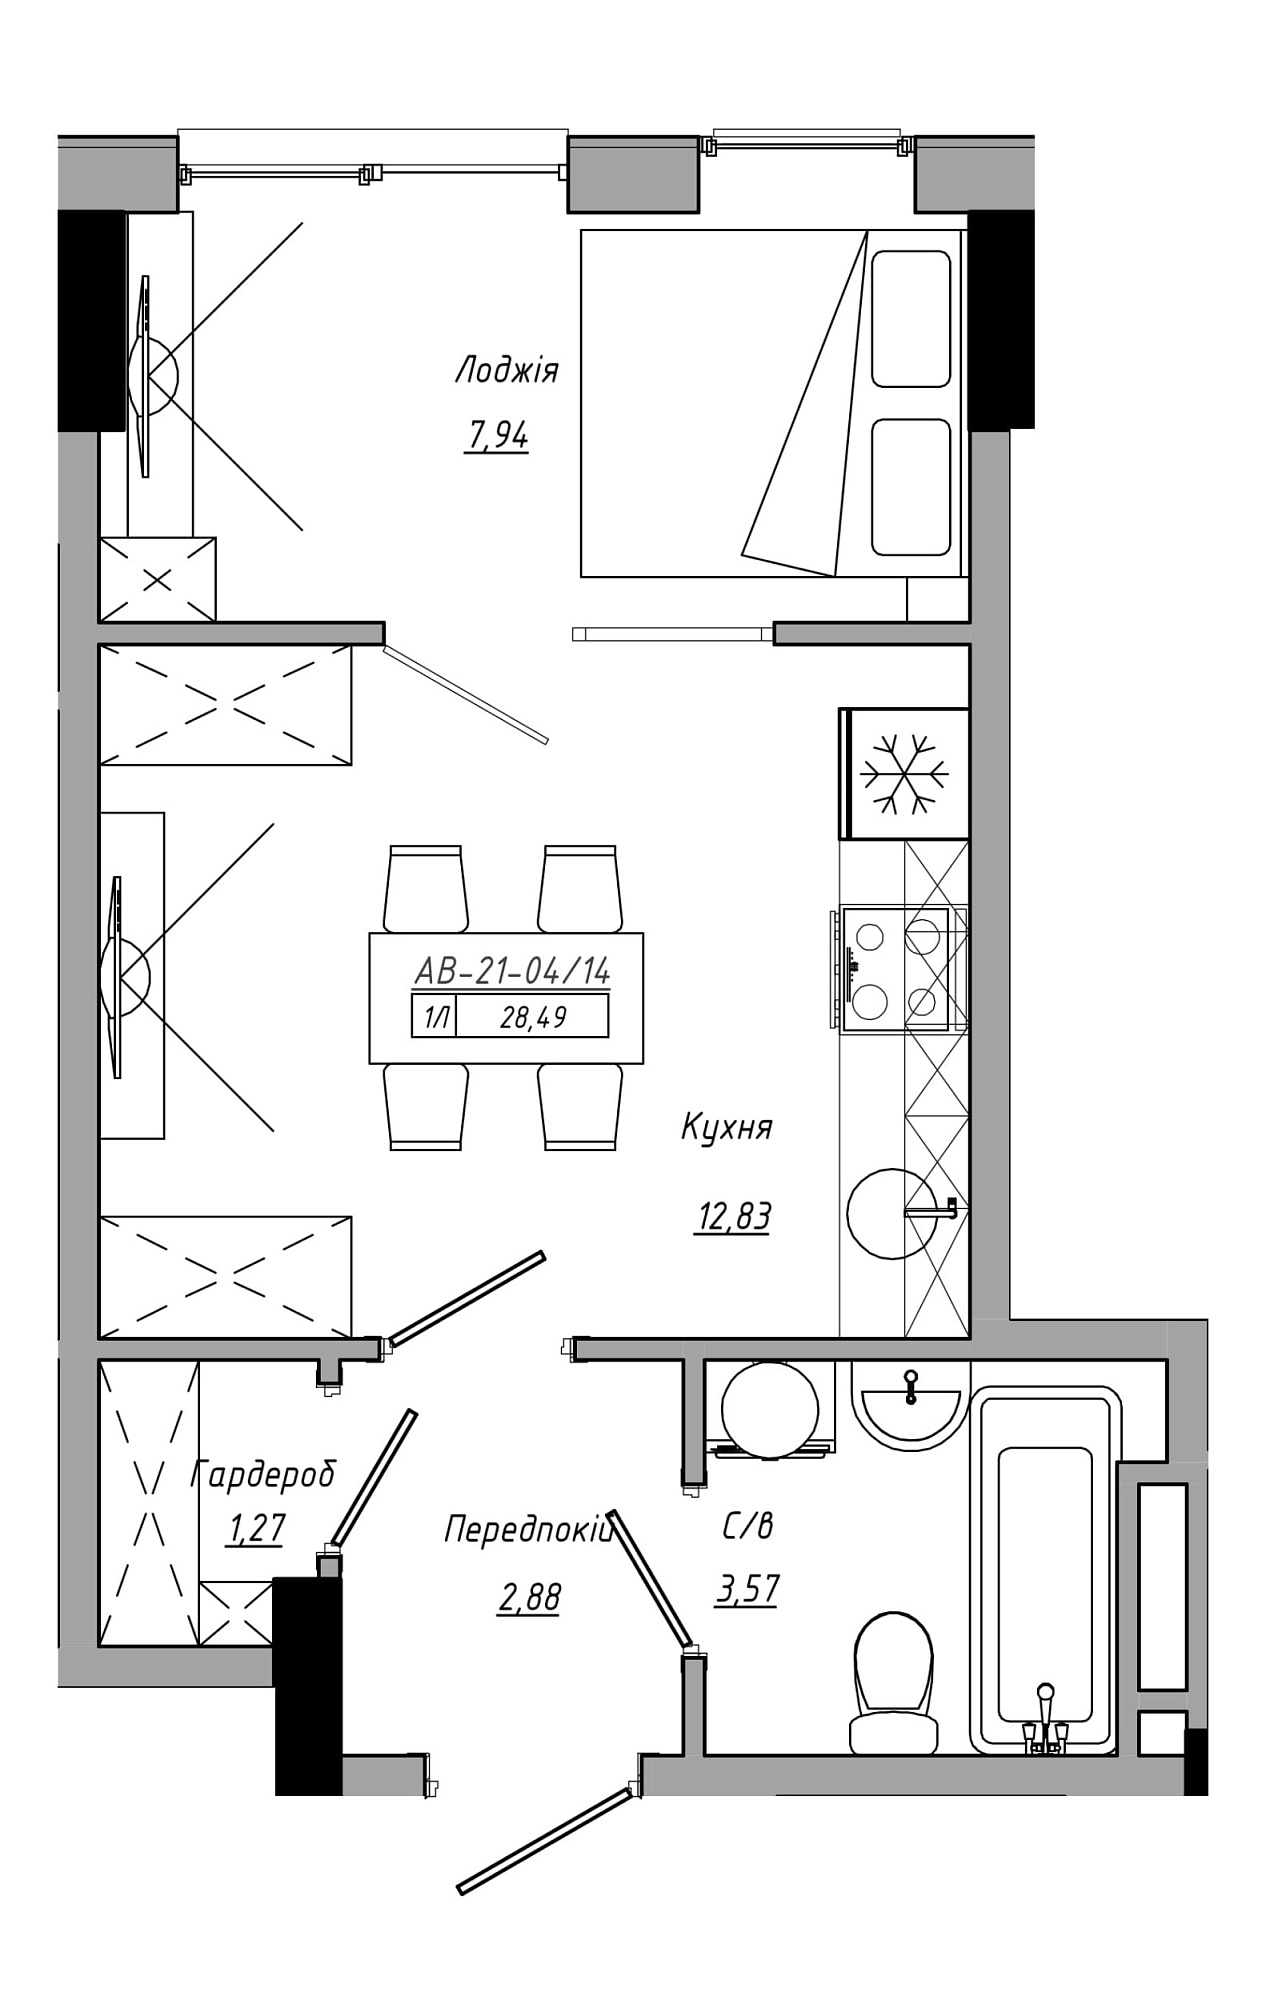 Планування 1-к квартира площею 28.49м2, AB-21-04/00014.